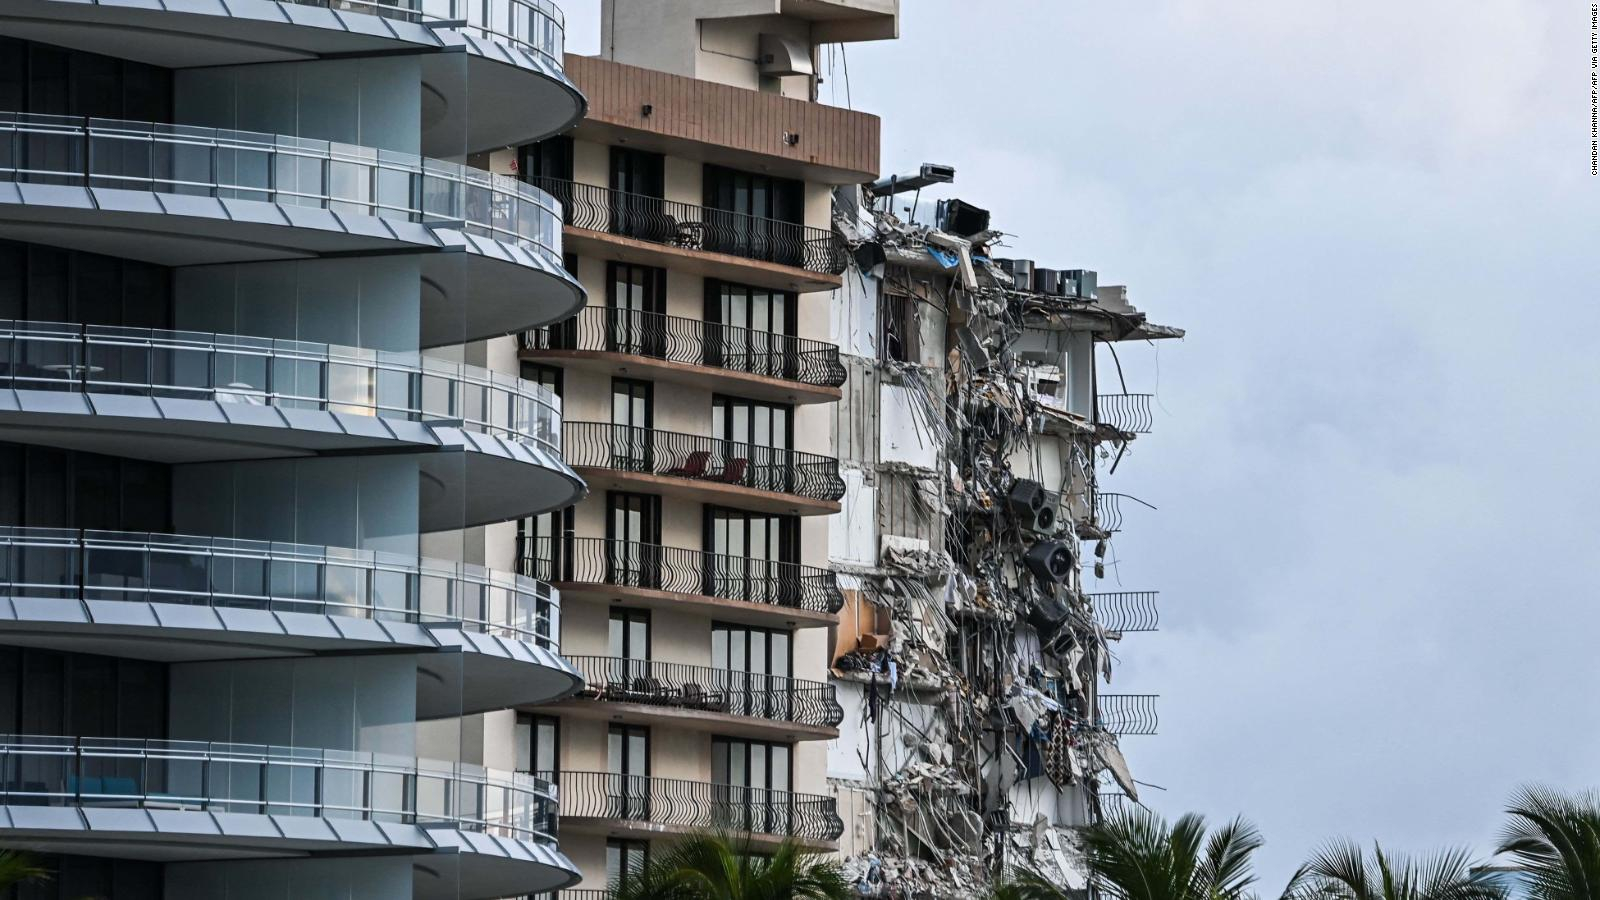 Reacciones tras el derrumbe del edificio en Surfside: “Es una tragedia inimaginable”